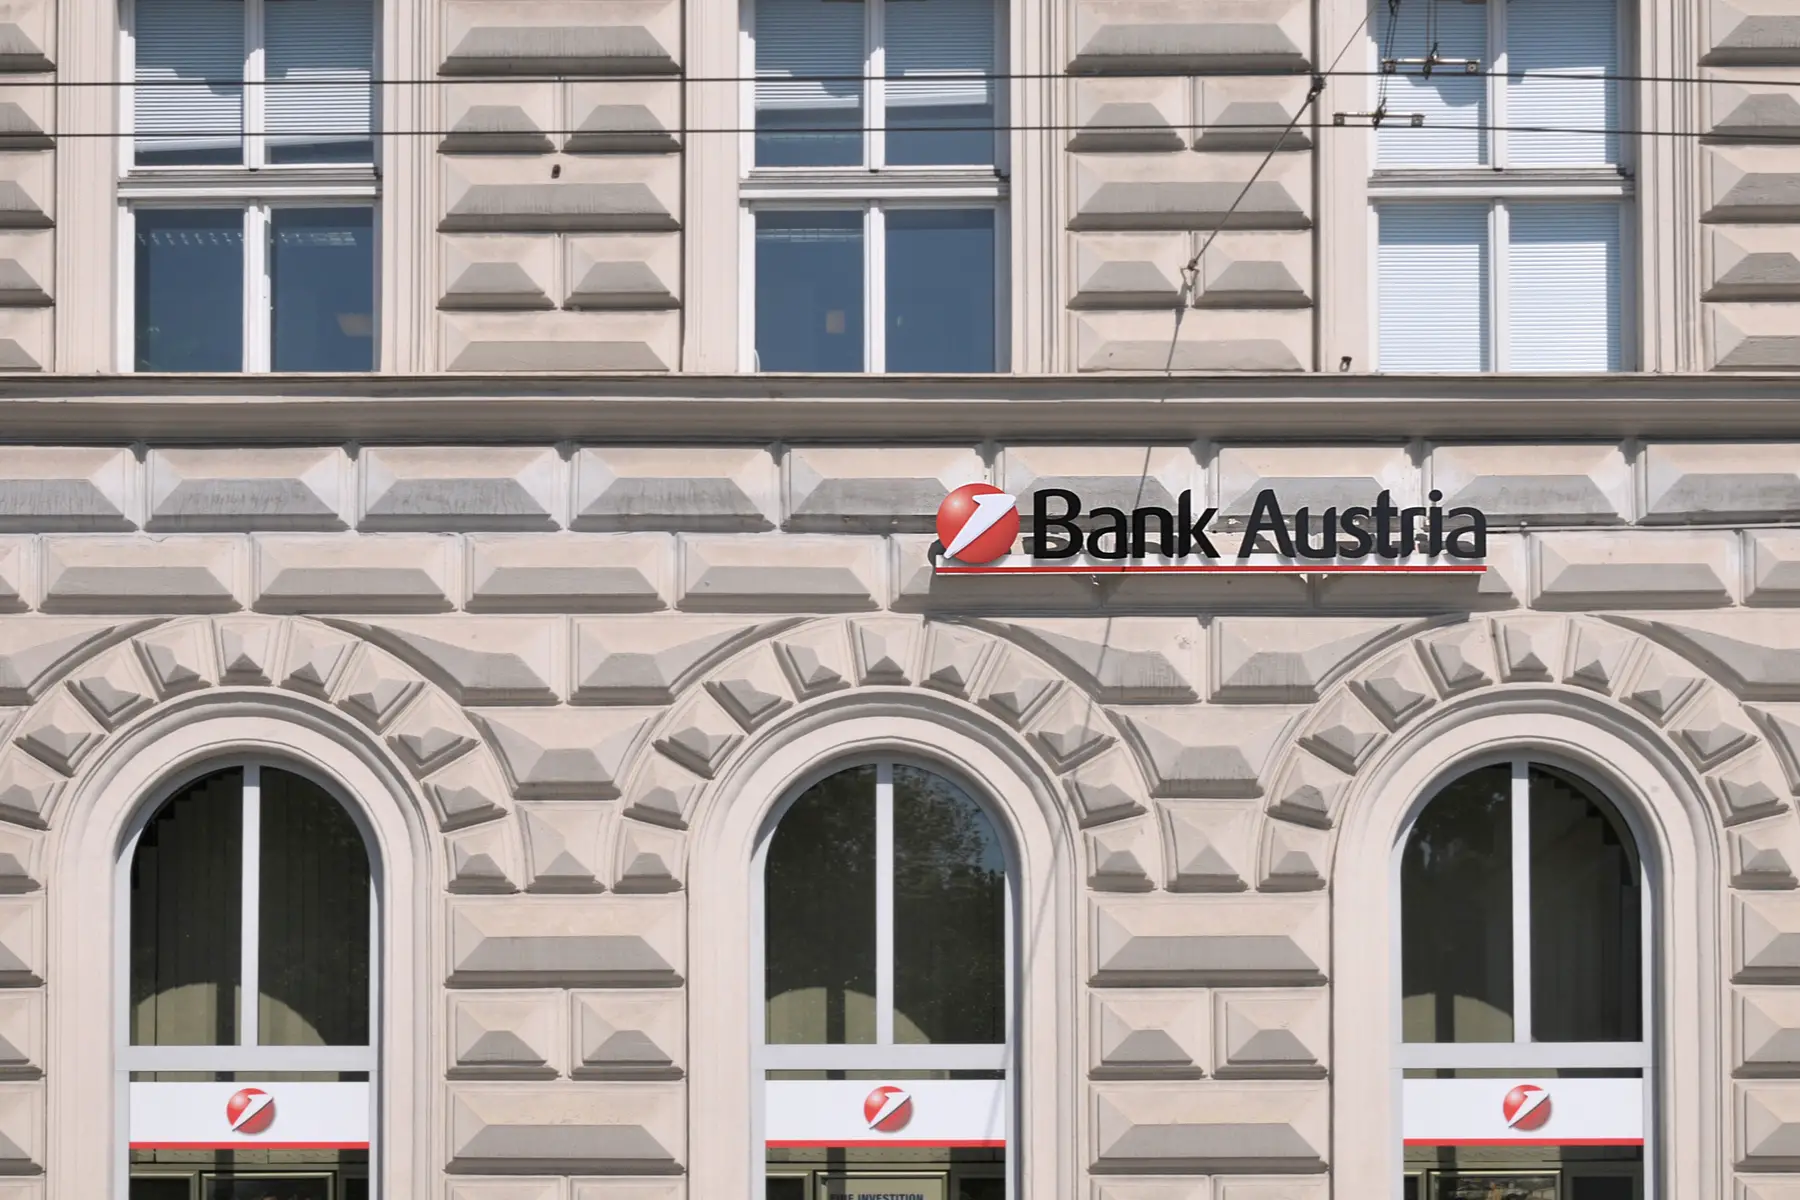 A Bank Austria branch in Vienna